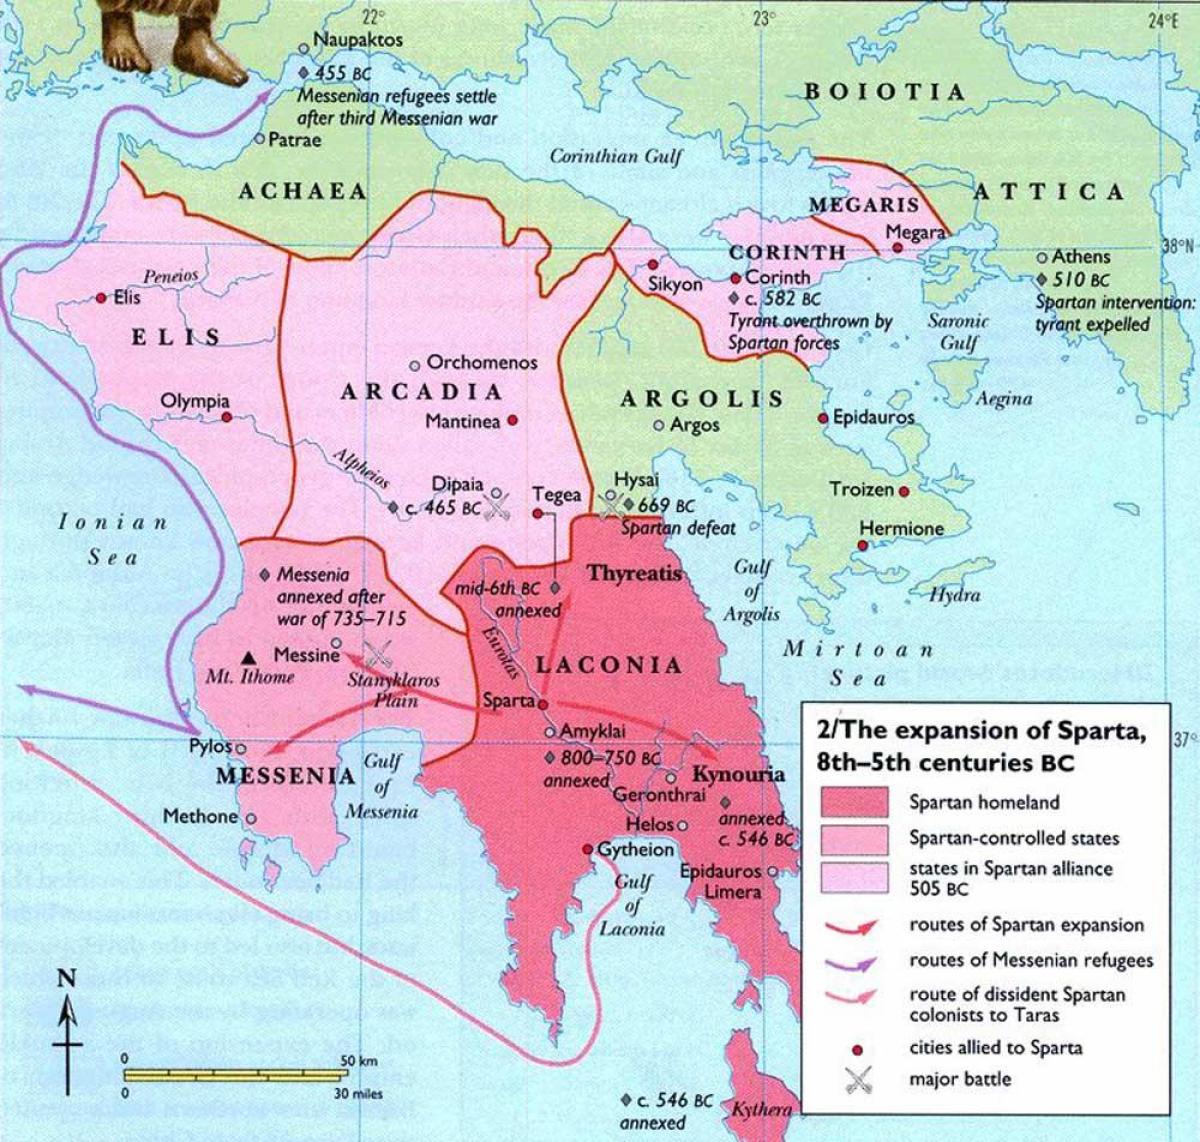 древна гърция карта Спарта Древна Гърция е карта   карта на Древна Гърция Спарта (Южна  древна гърция карта